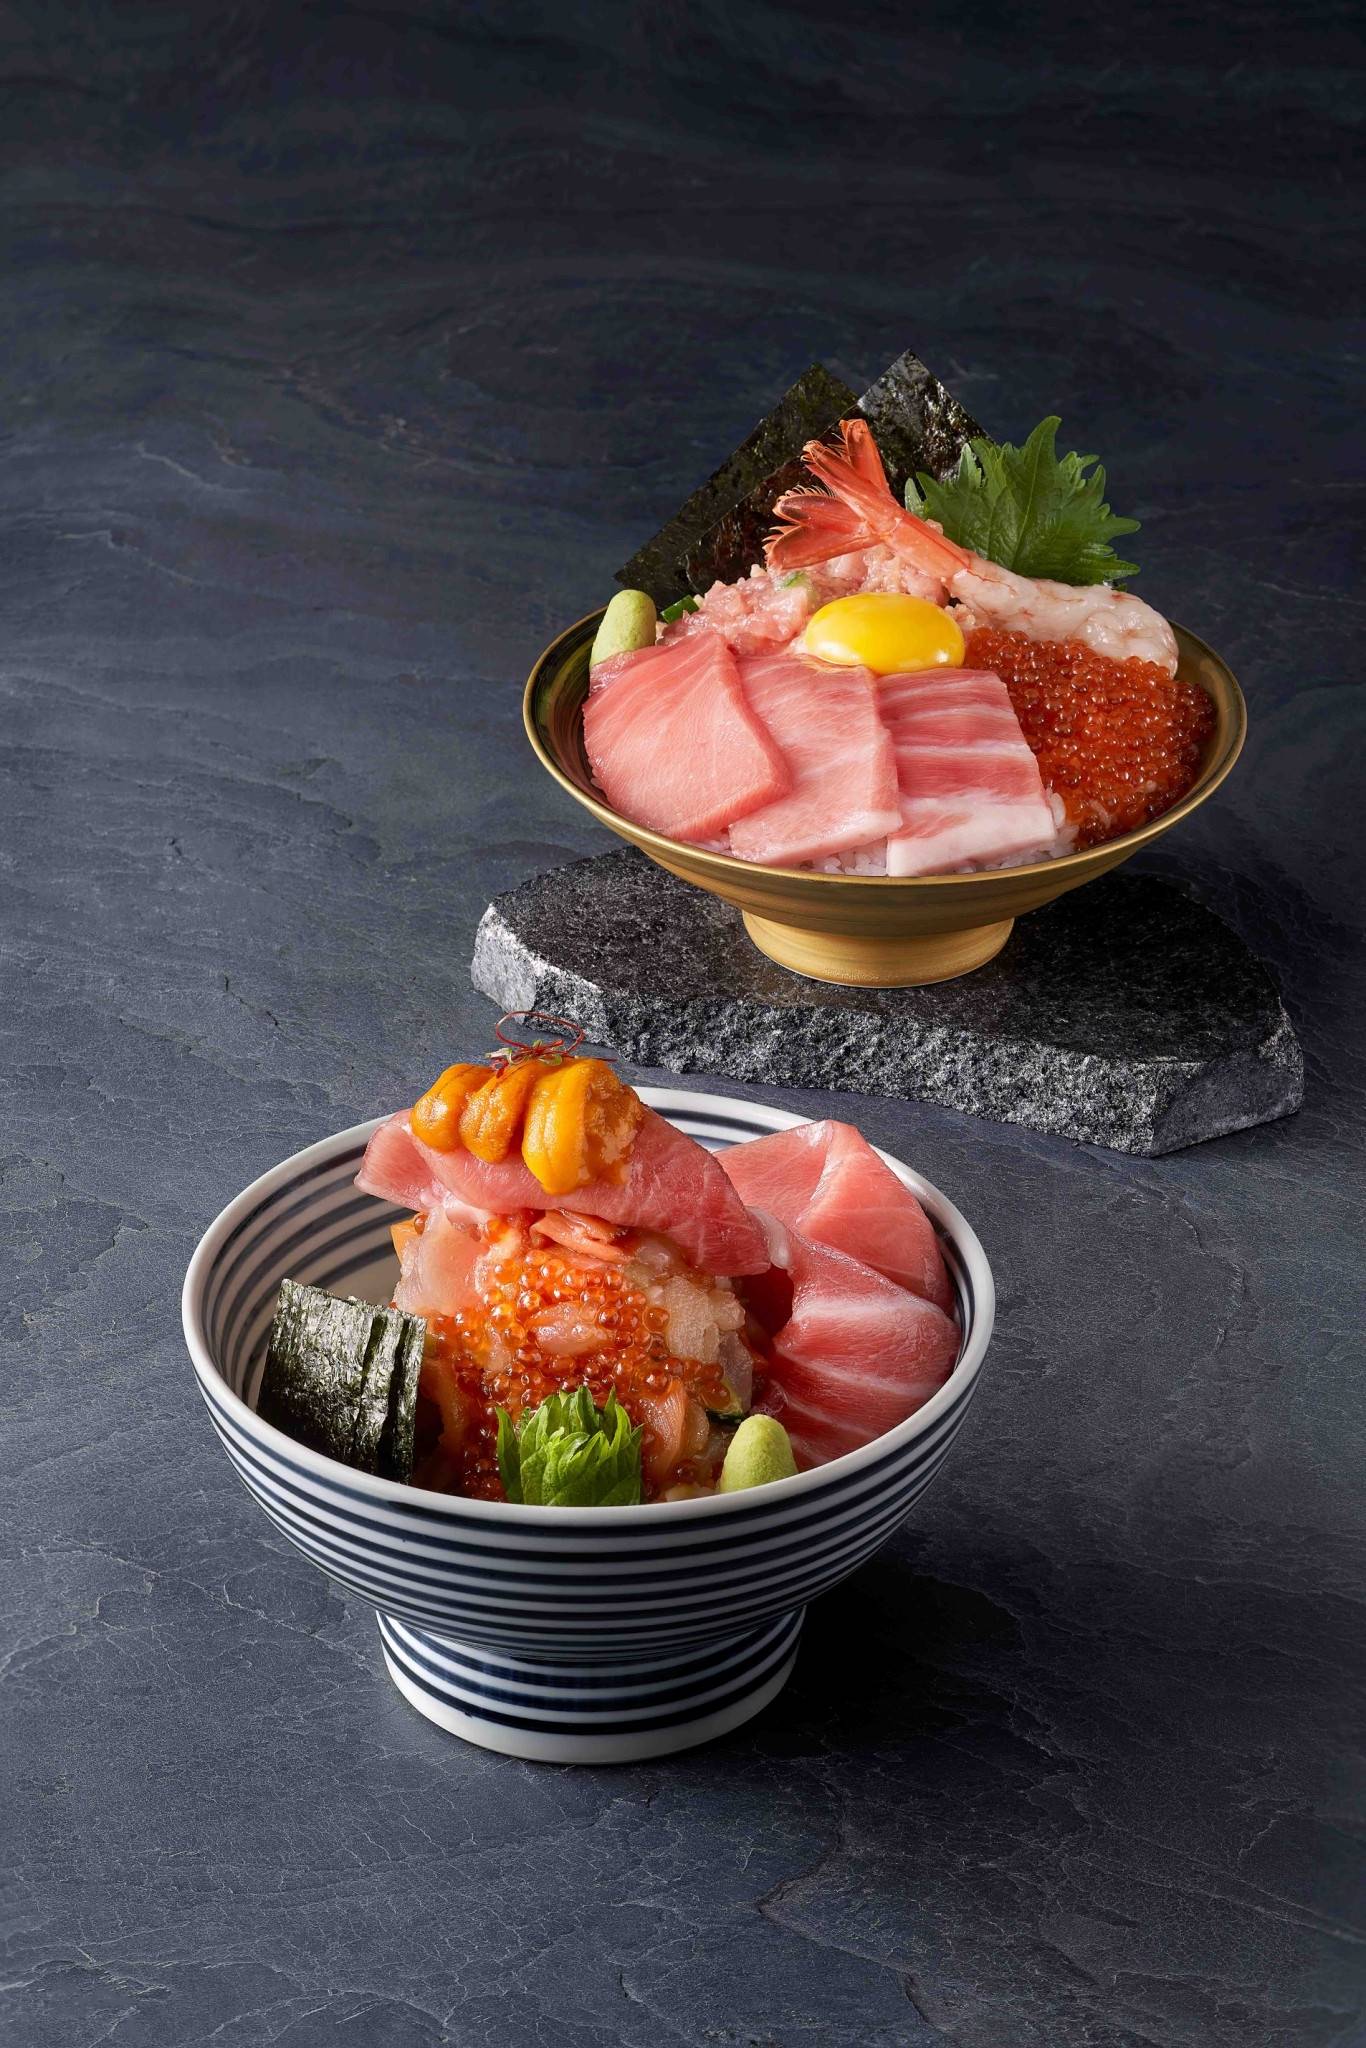 日本黑鮪堪稱是鮪魚中的夢幻逸品，又被稱為「海中黑金」在日本料理上占有不可取代的地位。４月到來黑鮪正當時，晶透如粉鑽般的迷人色澤，一抿即化於味蕾，讓一眾老饕們沈醉黑鮪的鮮美滋味。連續七屆榮獲日本海鮮丼金賞獎、日本權威食評網站食べログ（Tablog）評比排名東京TOP 1海鮮丼品牌－日本橋海鮮丼辻半（TSUJIHAN），將於4/13(四)以日本黑鮪為強棒主打，推出台灣獨家日本黑鮪珠寶盒及海鮮丼，而母親節也即將到來，想要寵愛摯親家人的老饕們，不妨來日本橋海鮮丼辻半享受一場絢爛輝煌的日本黑鮪季頂級盛宴。